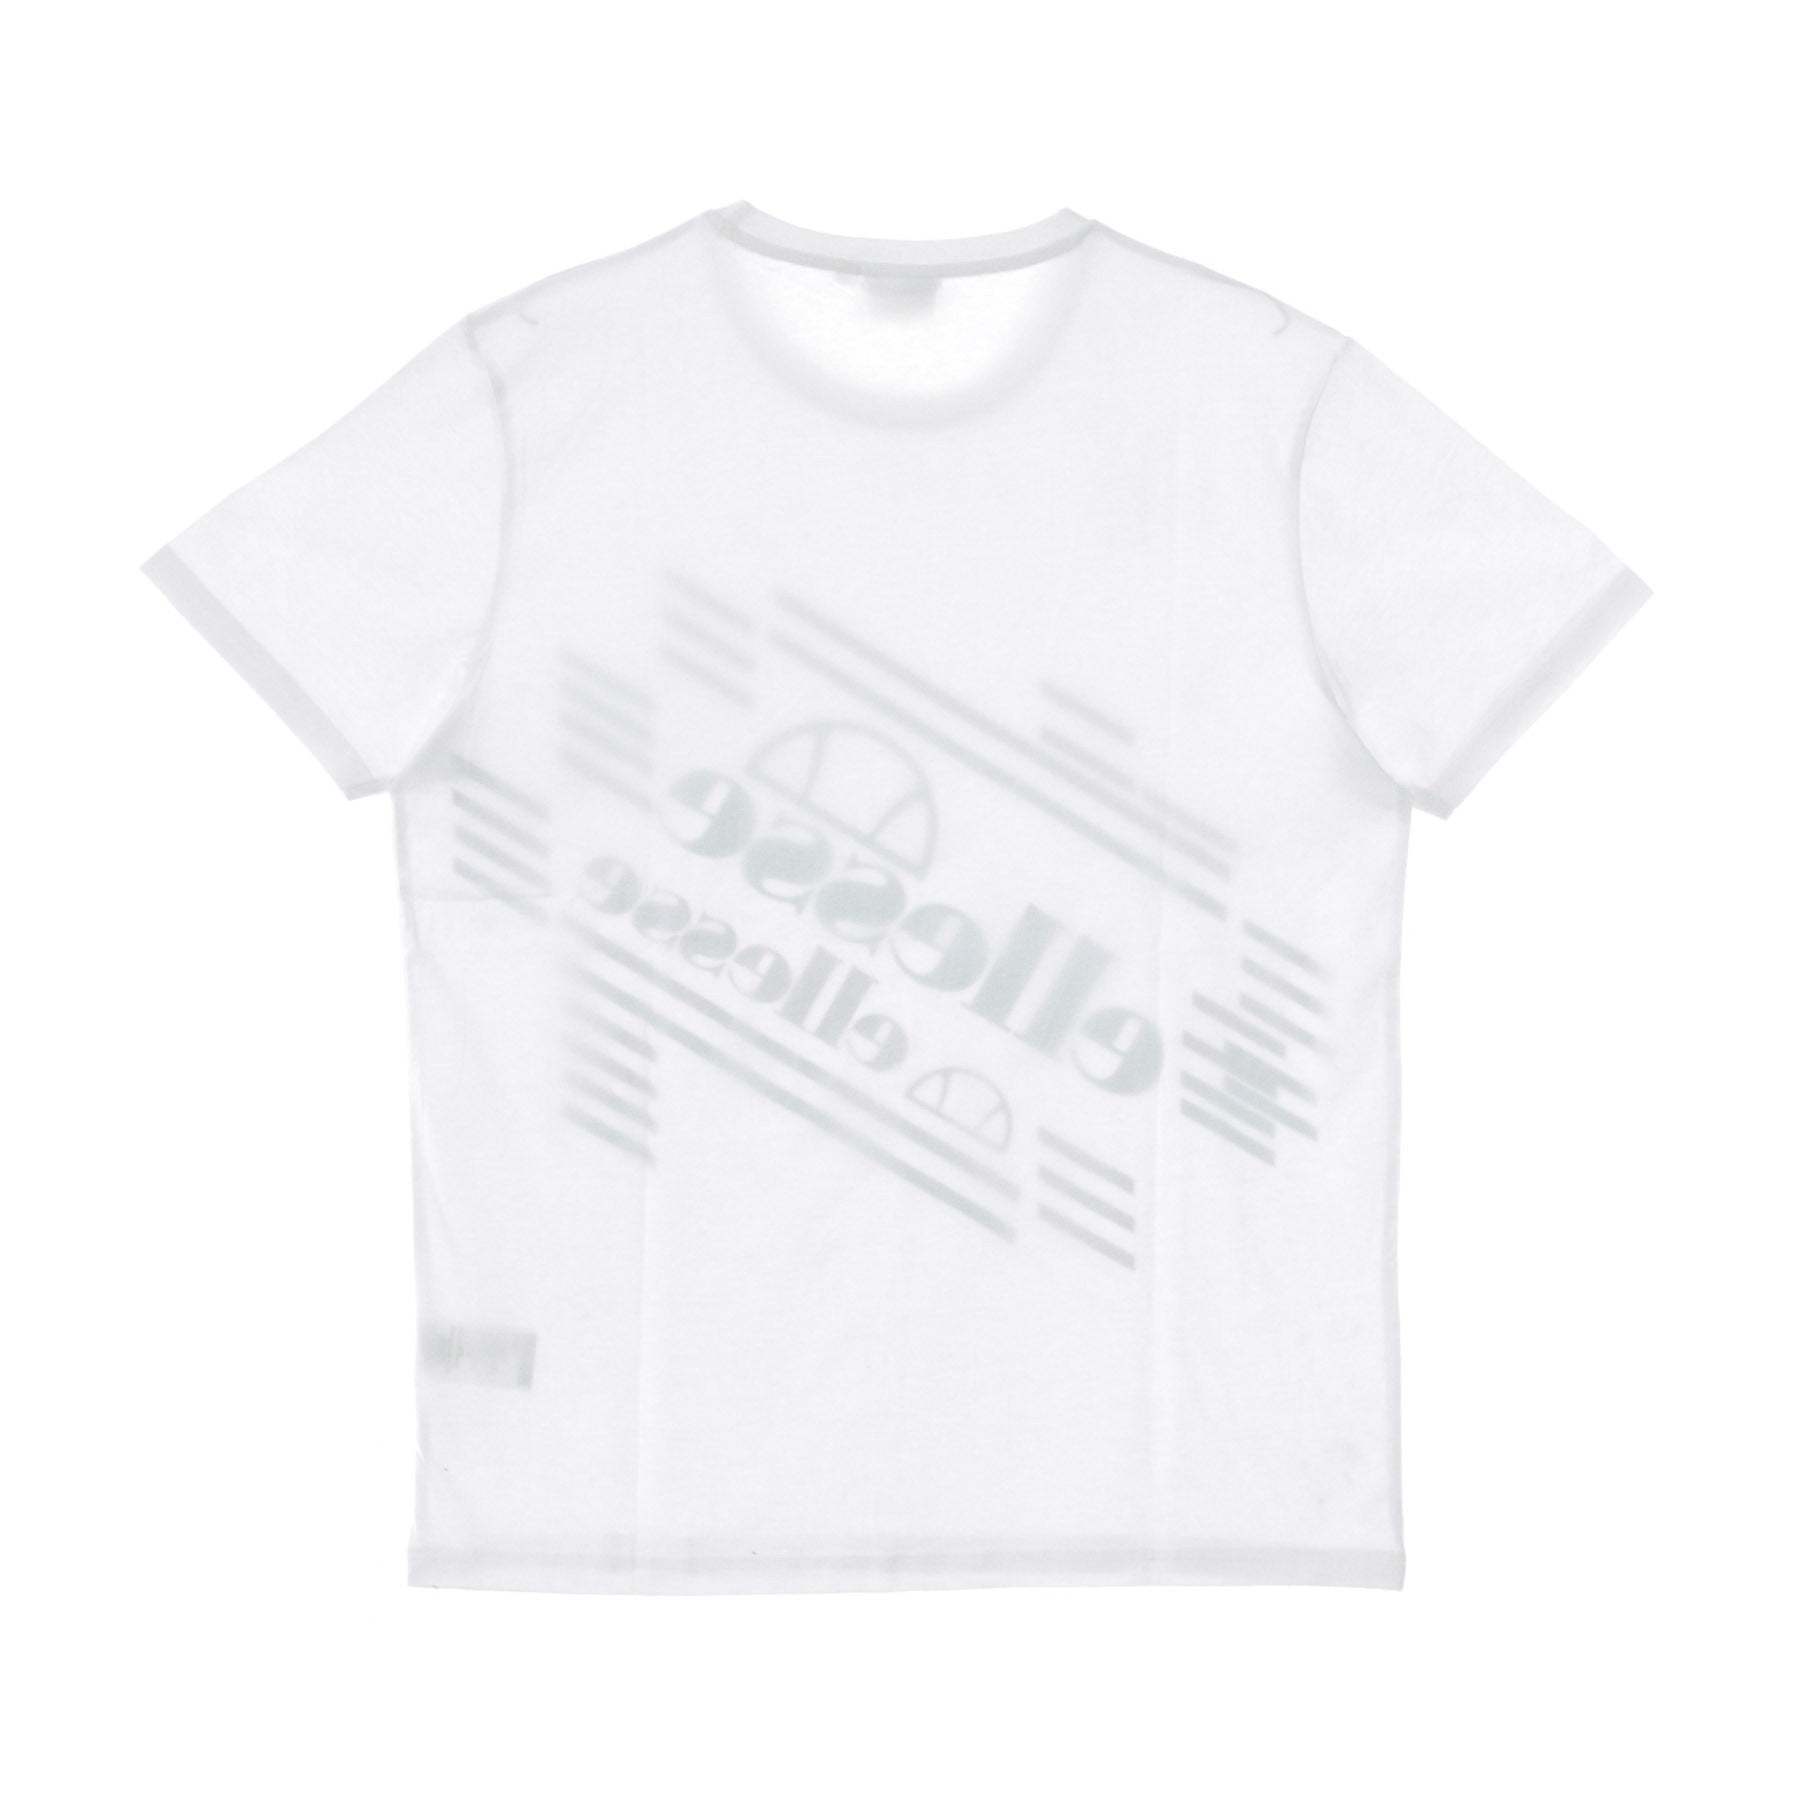 Men's T-shirt Optic White T-shirt